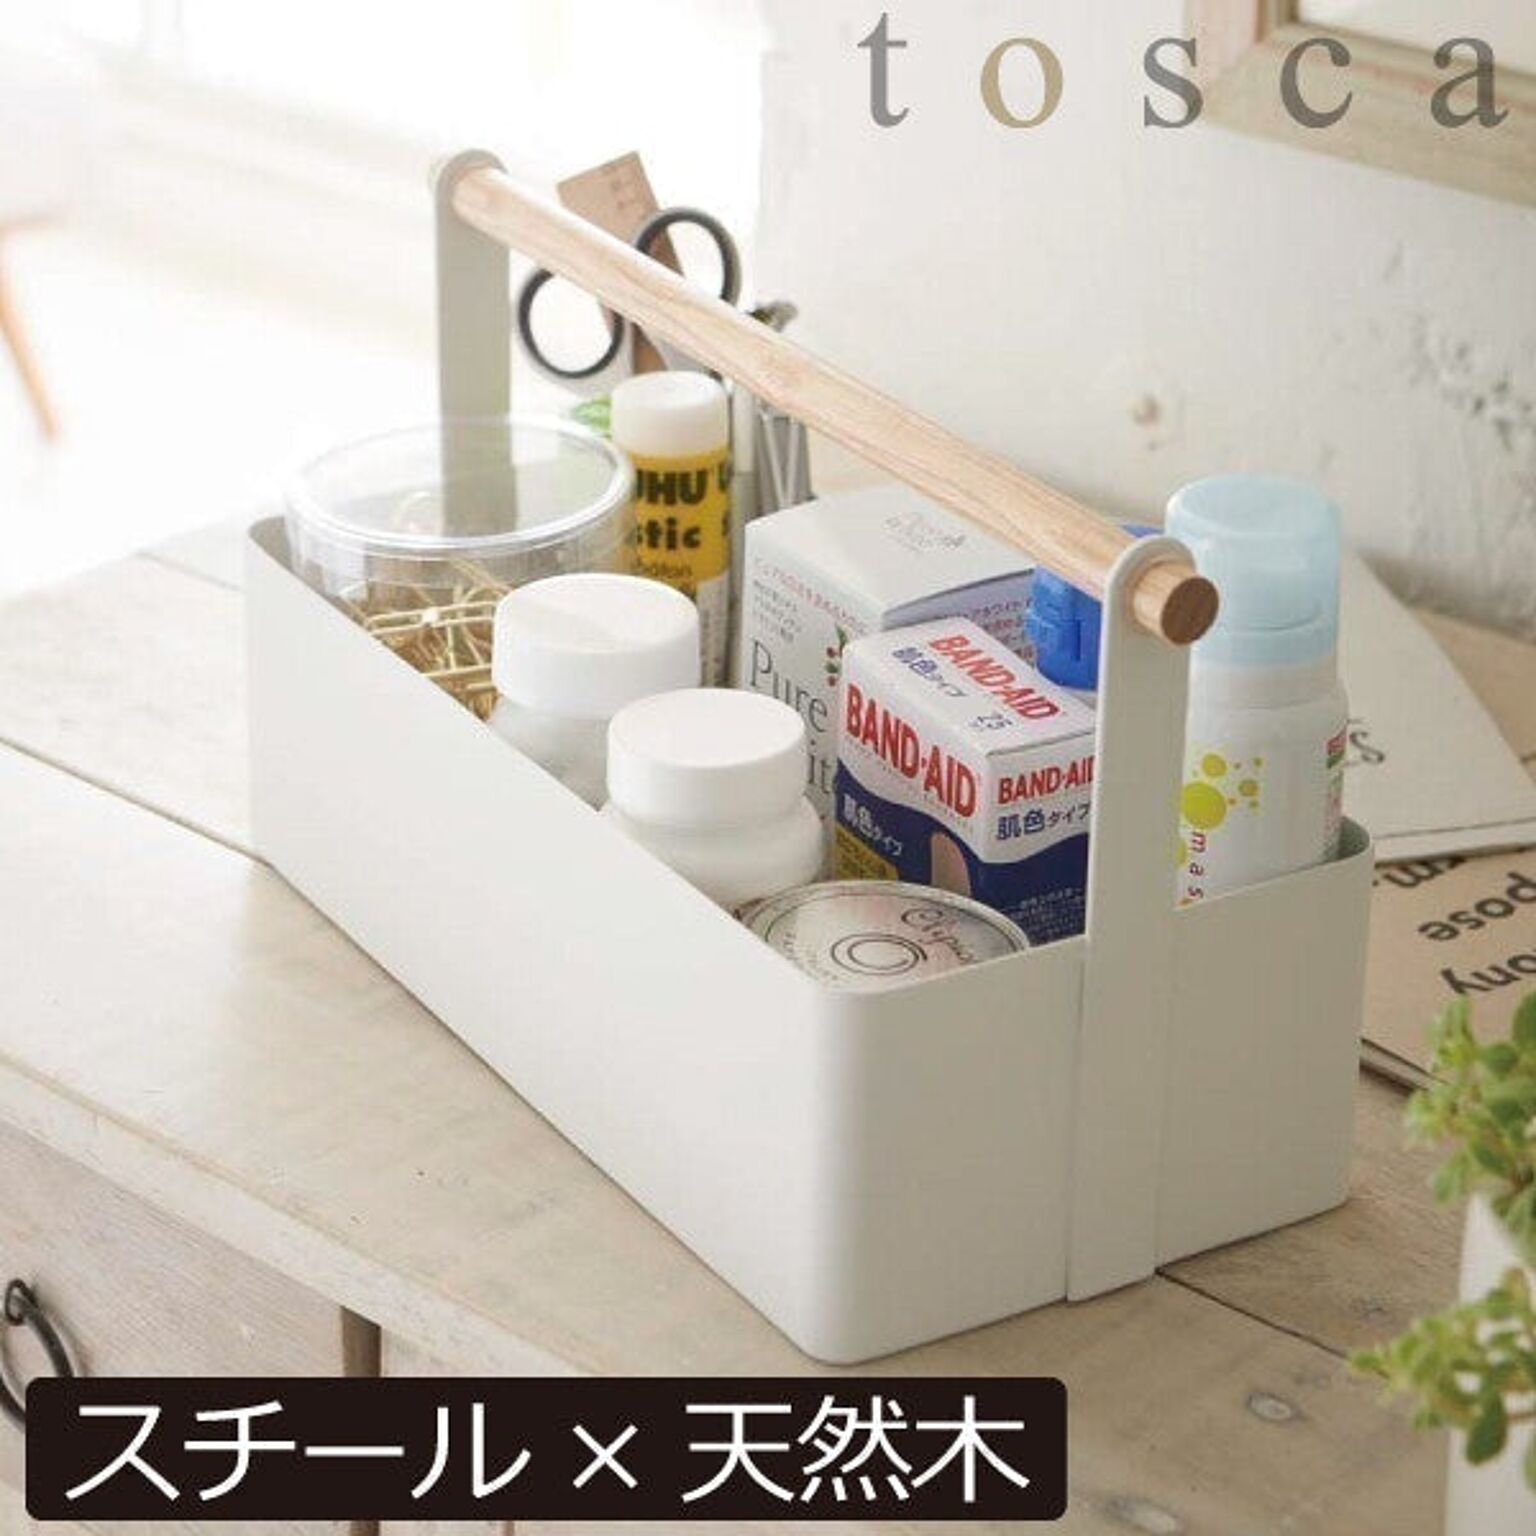 tosca / ツールボックス